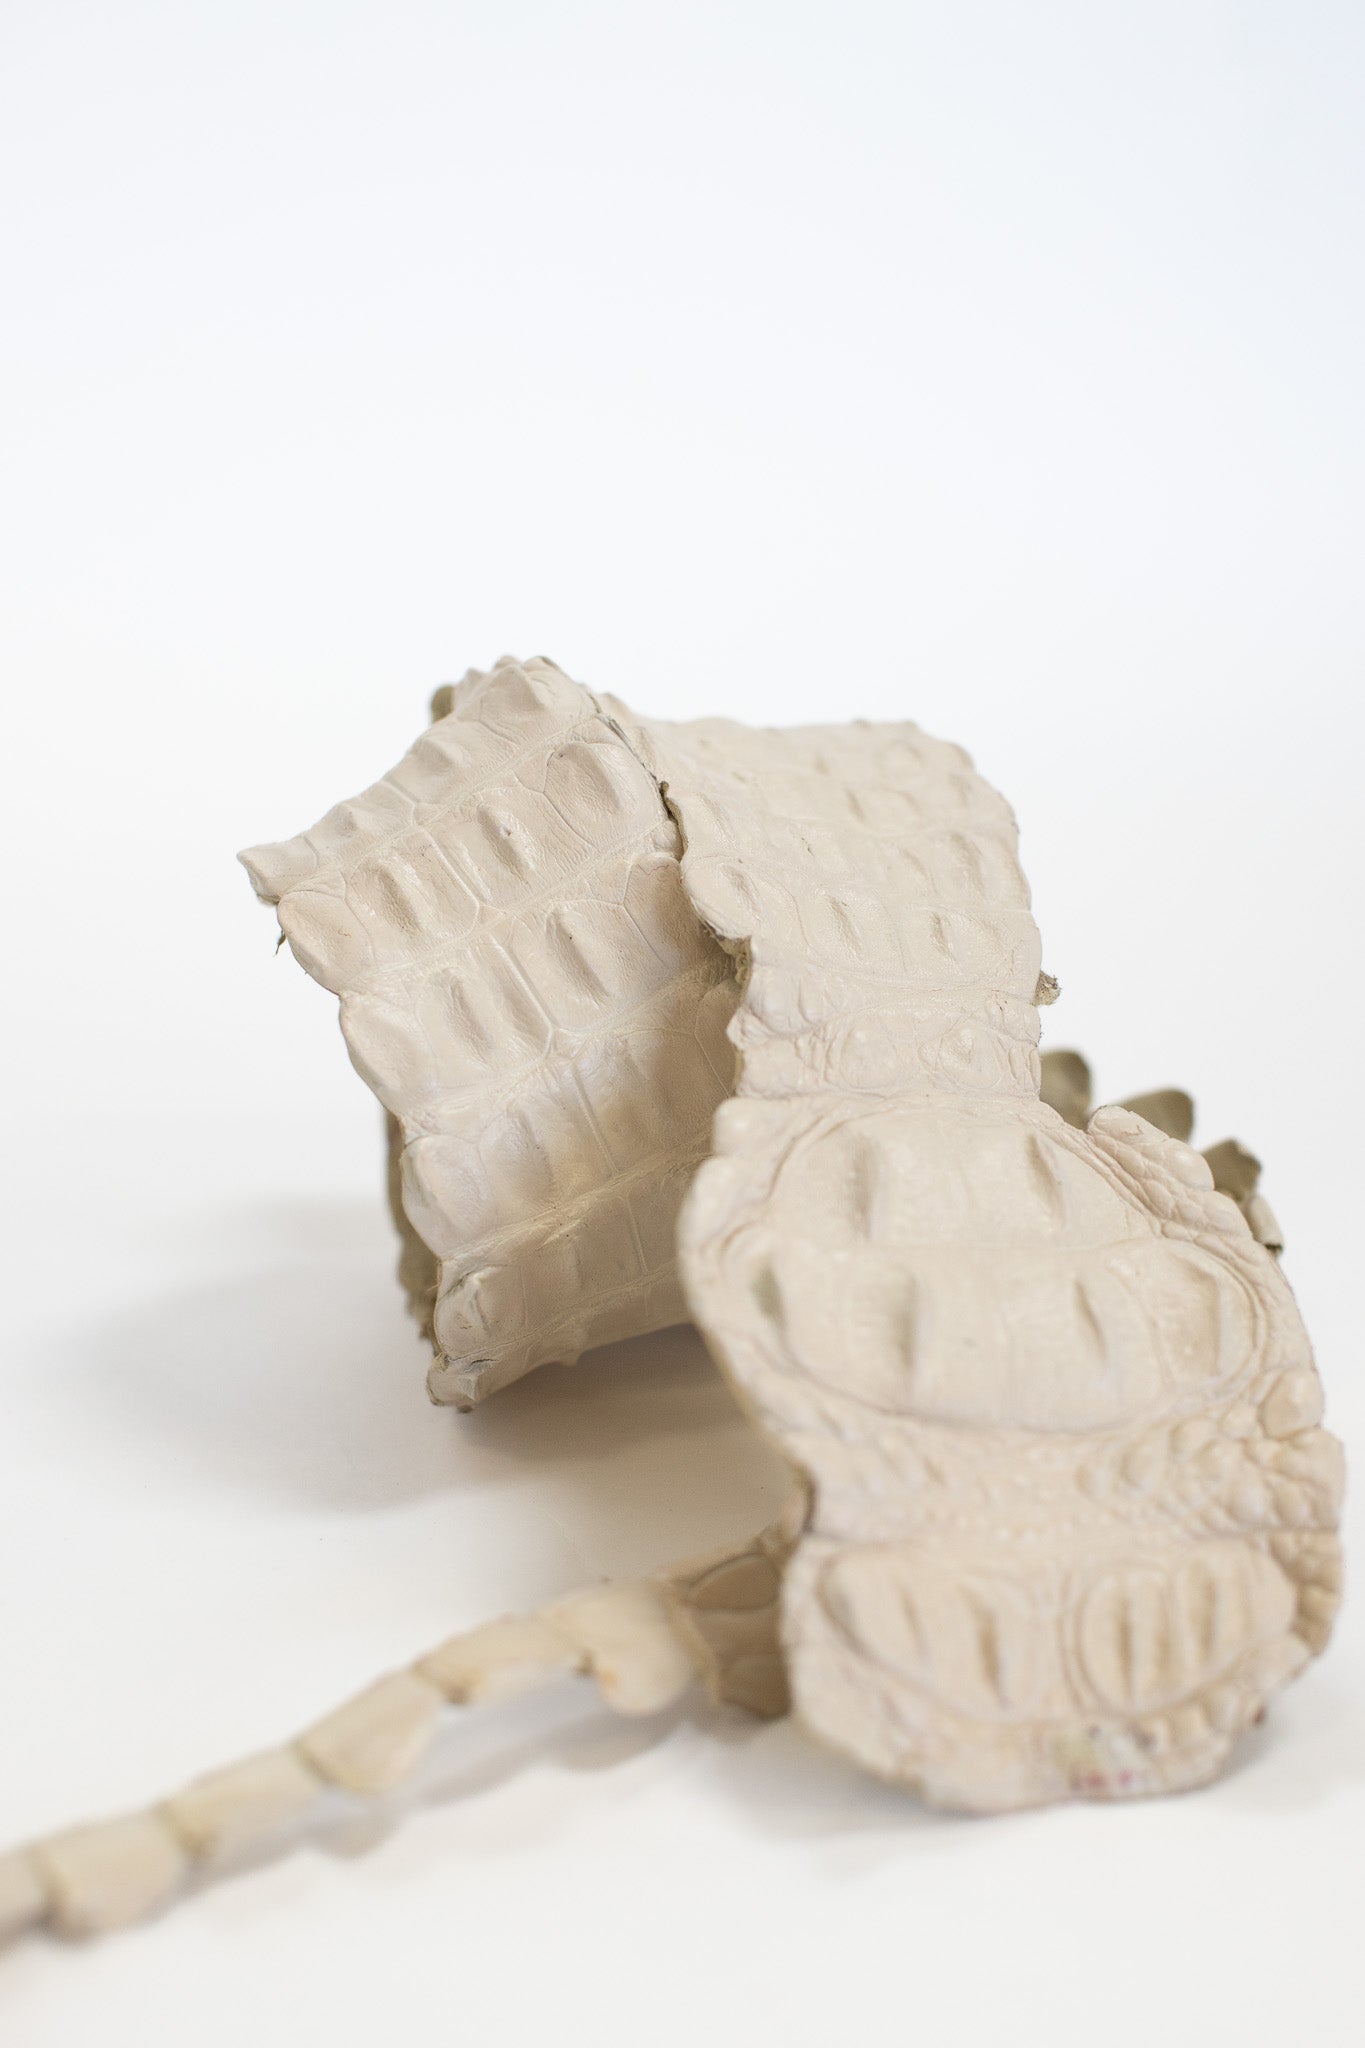 90-99 cm Grade 1 Bone Matte Nile Crocodile Backstrap Leather